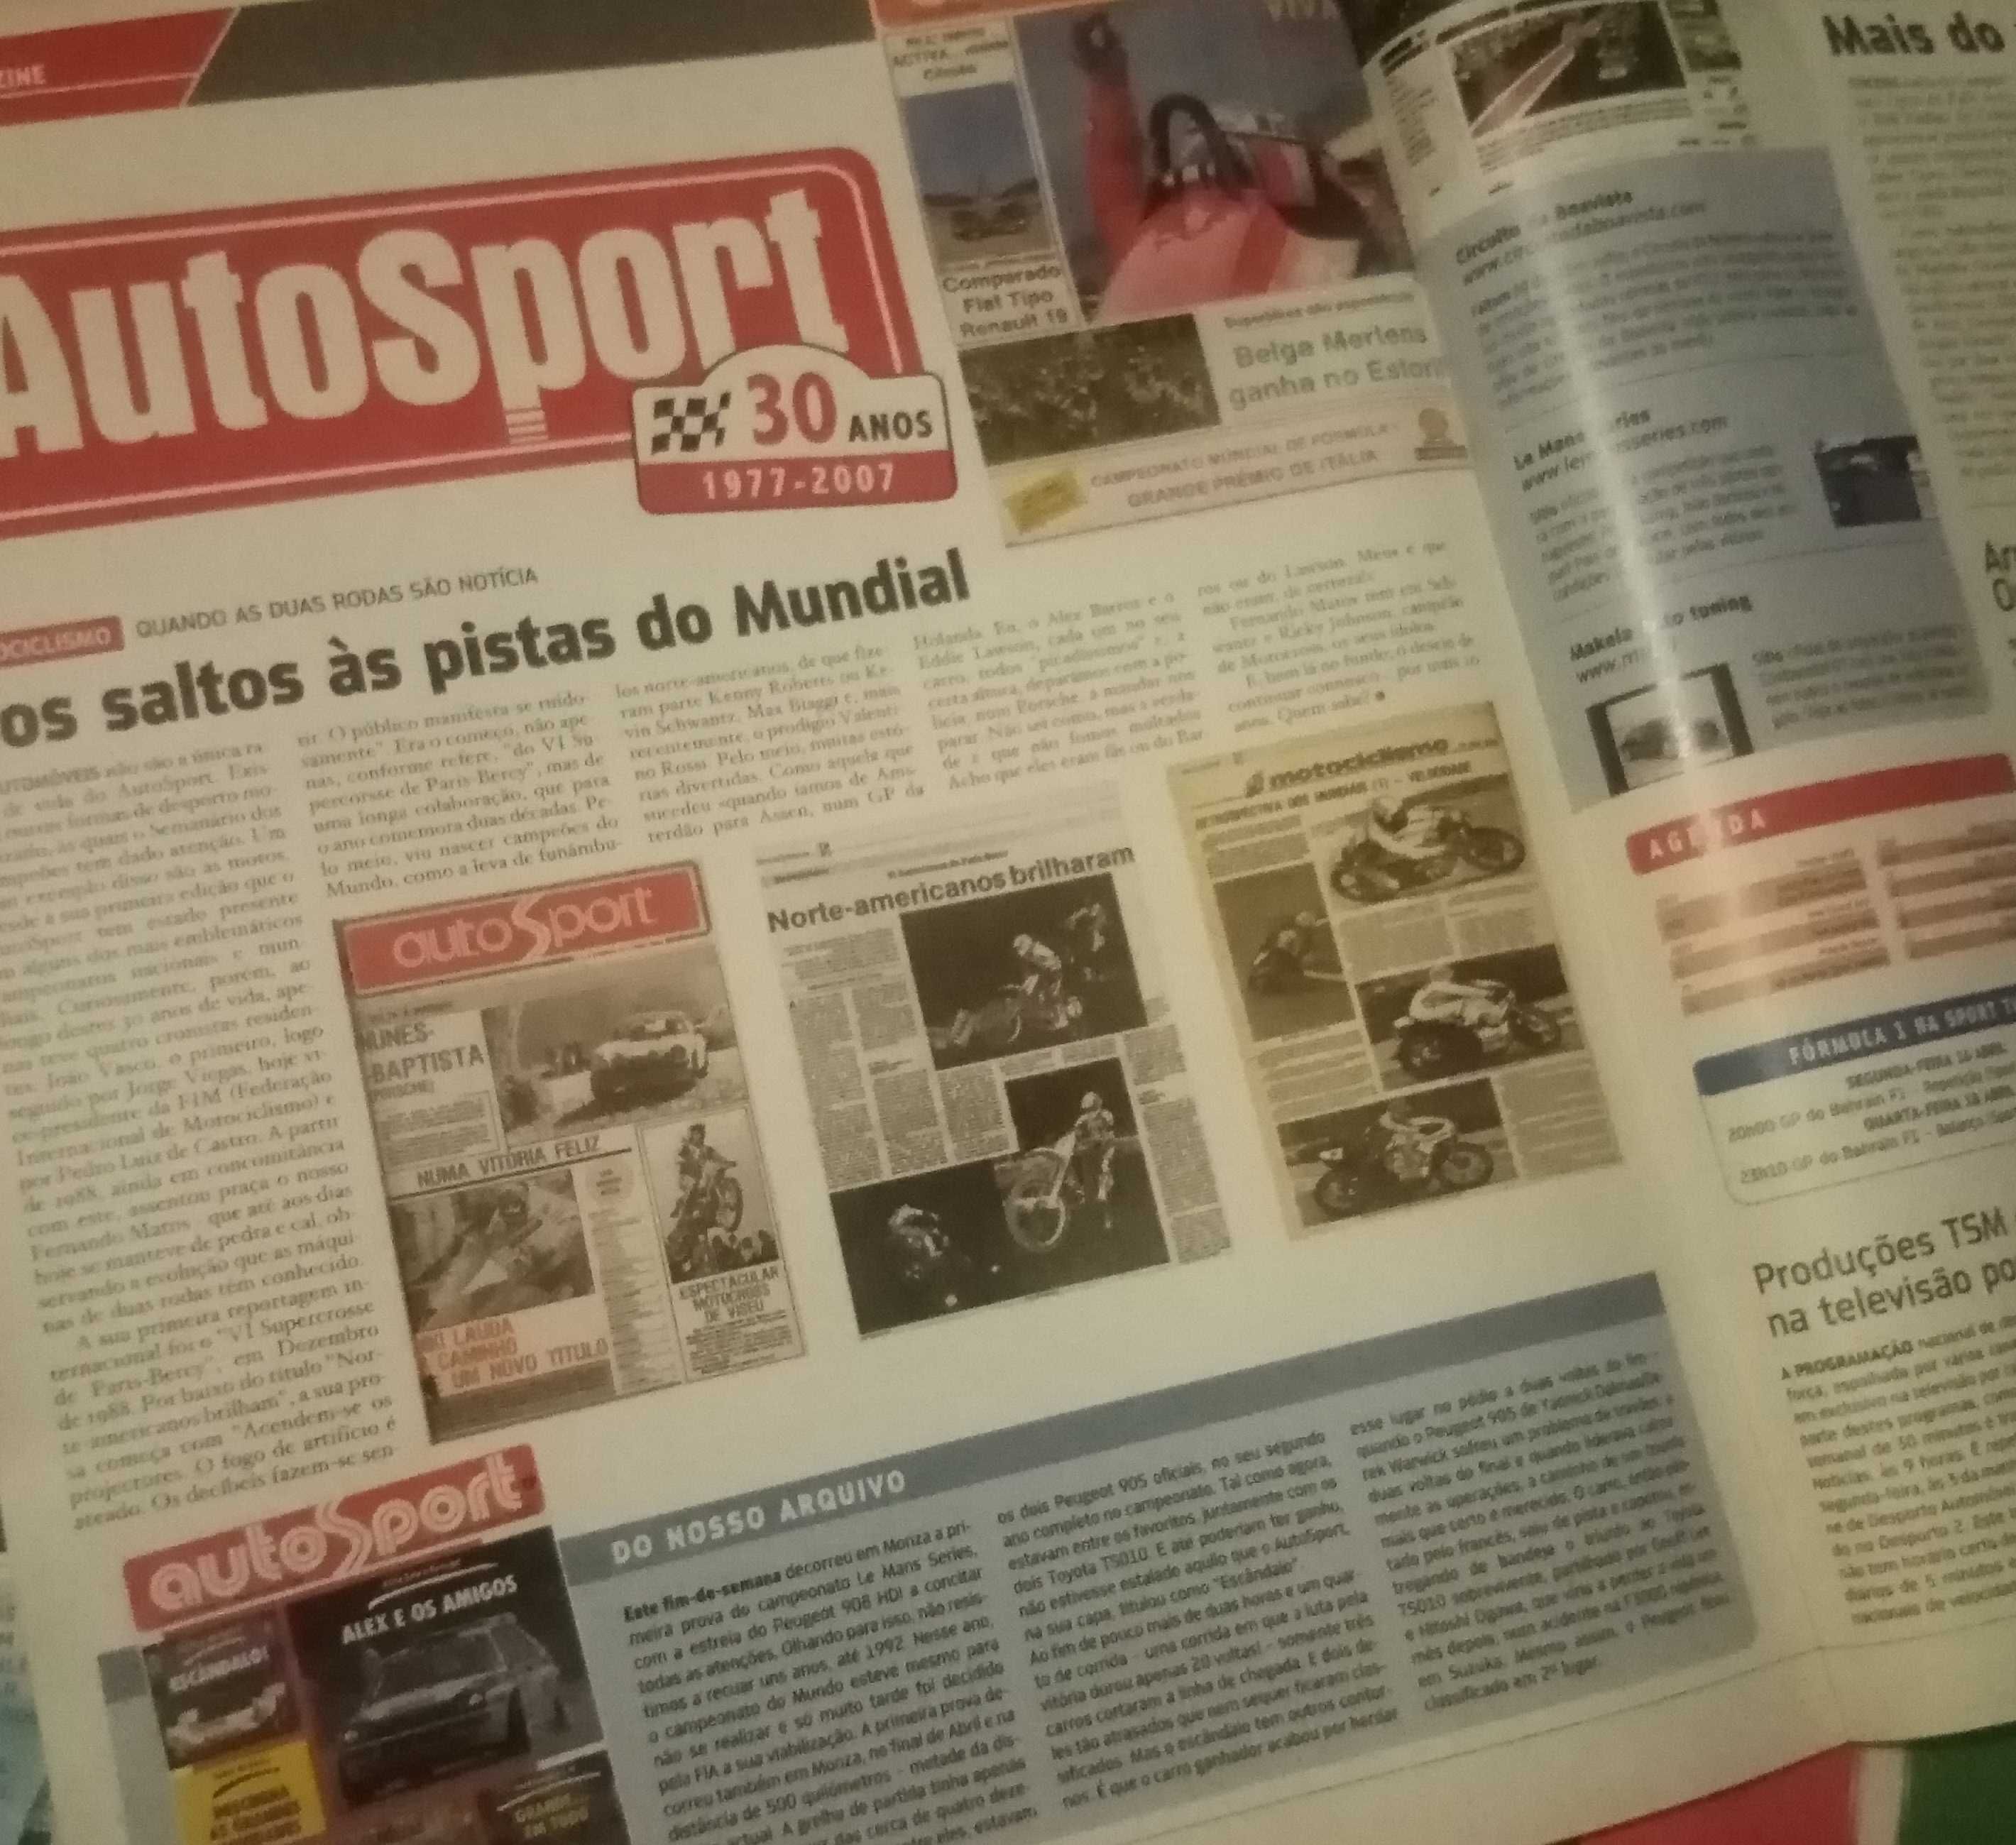 Revistas AutoSport